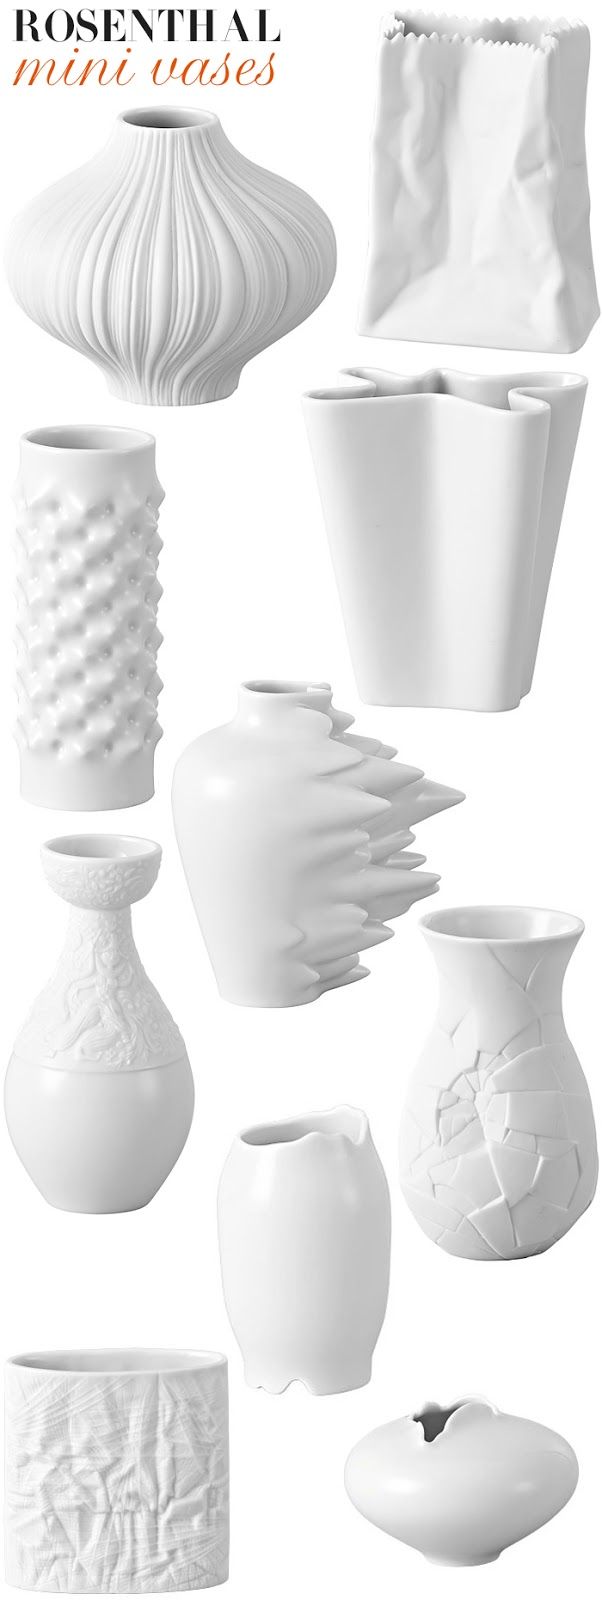 Rosenthal Mini Vases